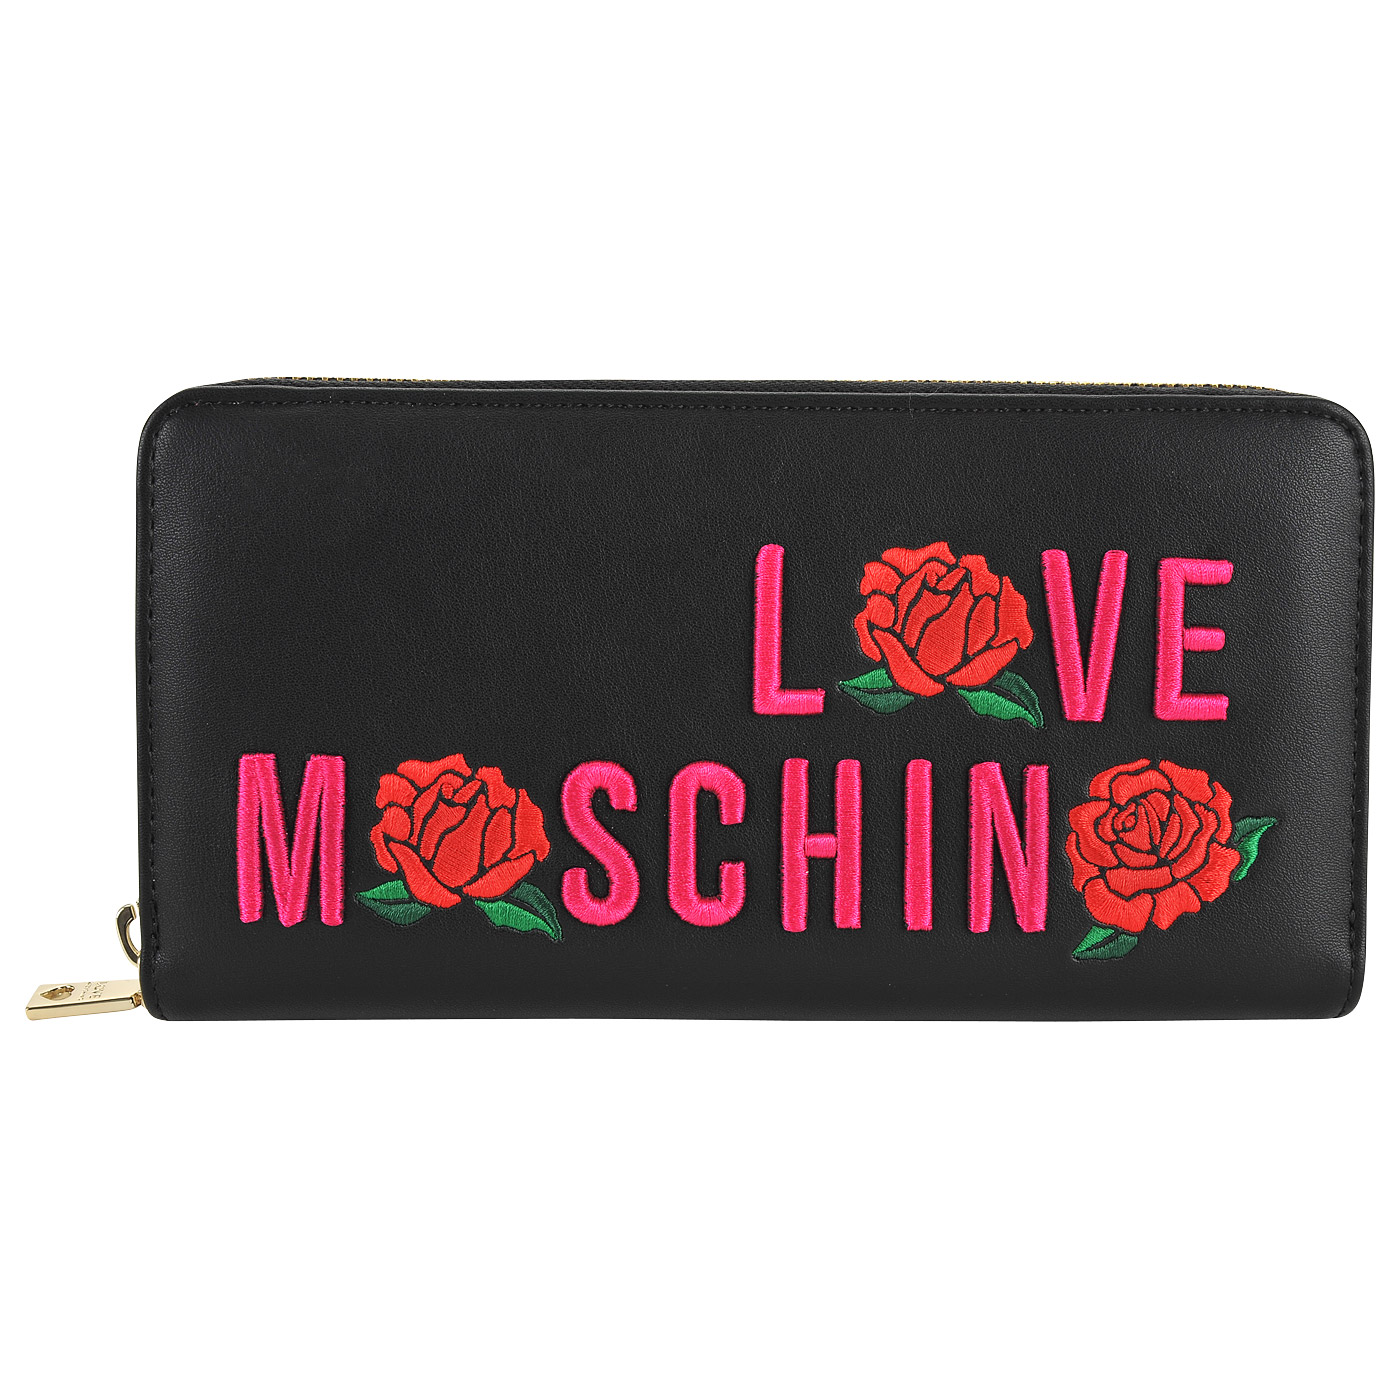 Love Moschino Женское портмоне с цветной вышивкой